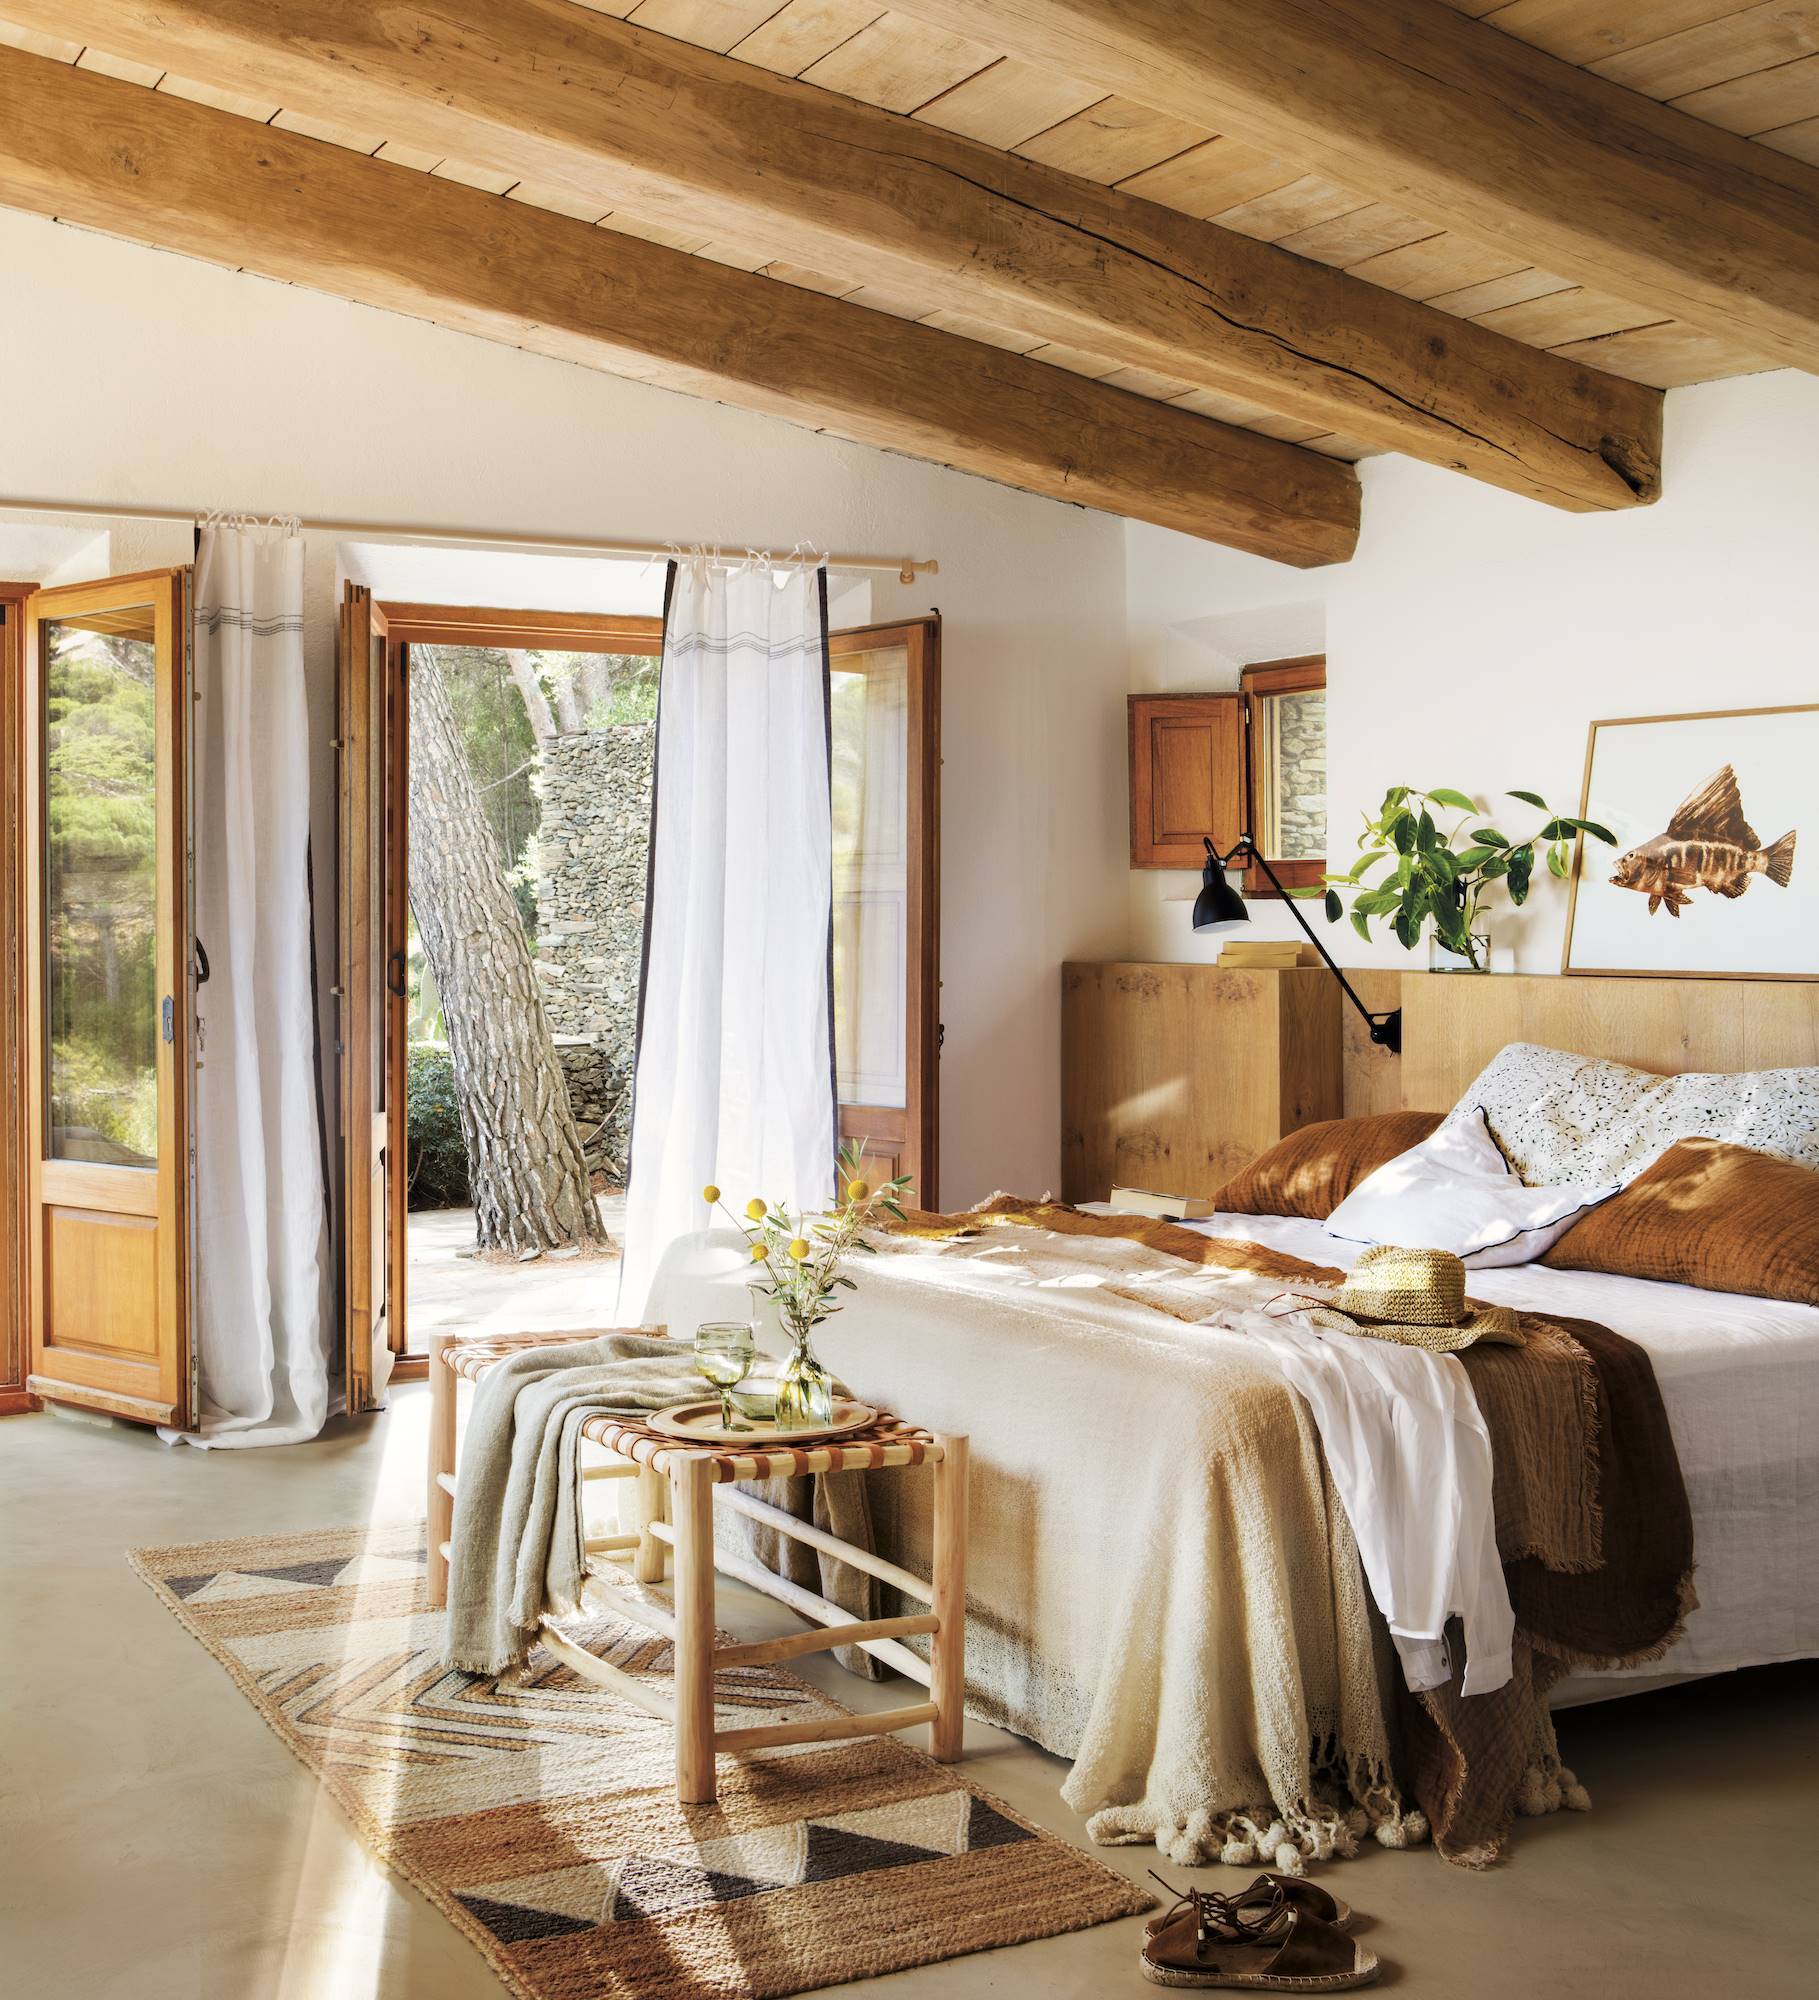 Dormitorio rústico con vigas de madera vistas, cabecero de madera a medida, y banco de madera al pie de cama 00486941 0bd65ae0 1819x2000